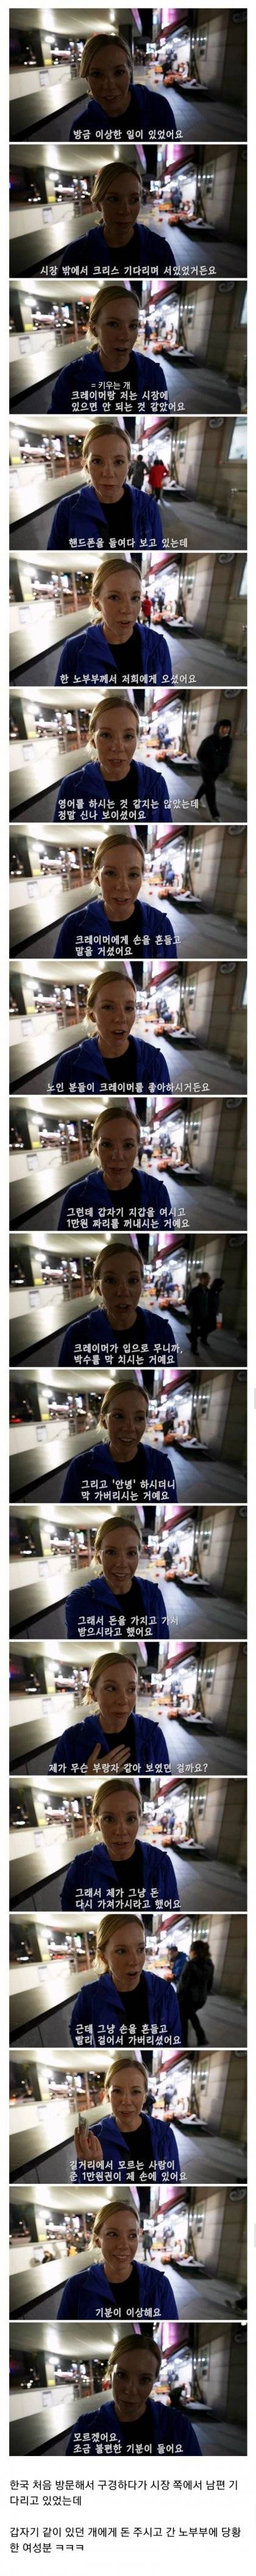 16 한국 관광 중에 갑자기 노부부가 돈 줘서 불편했던 외국인.jpg